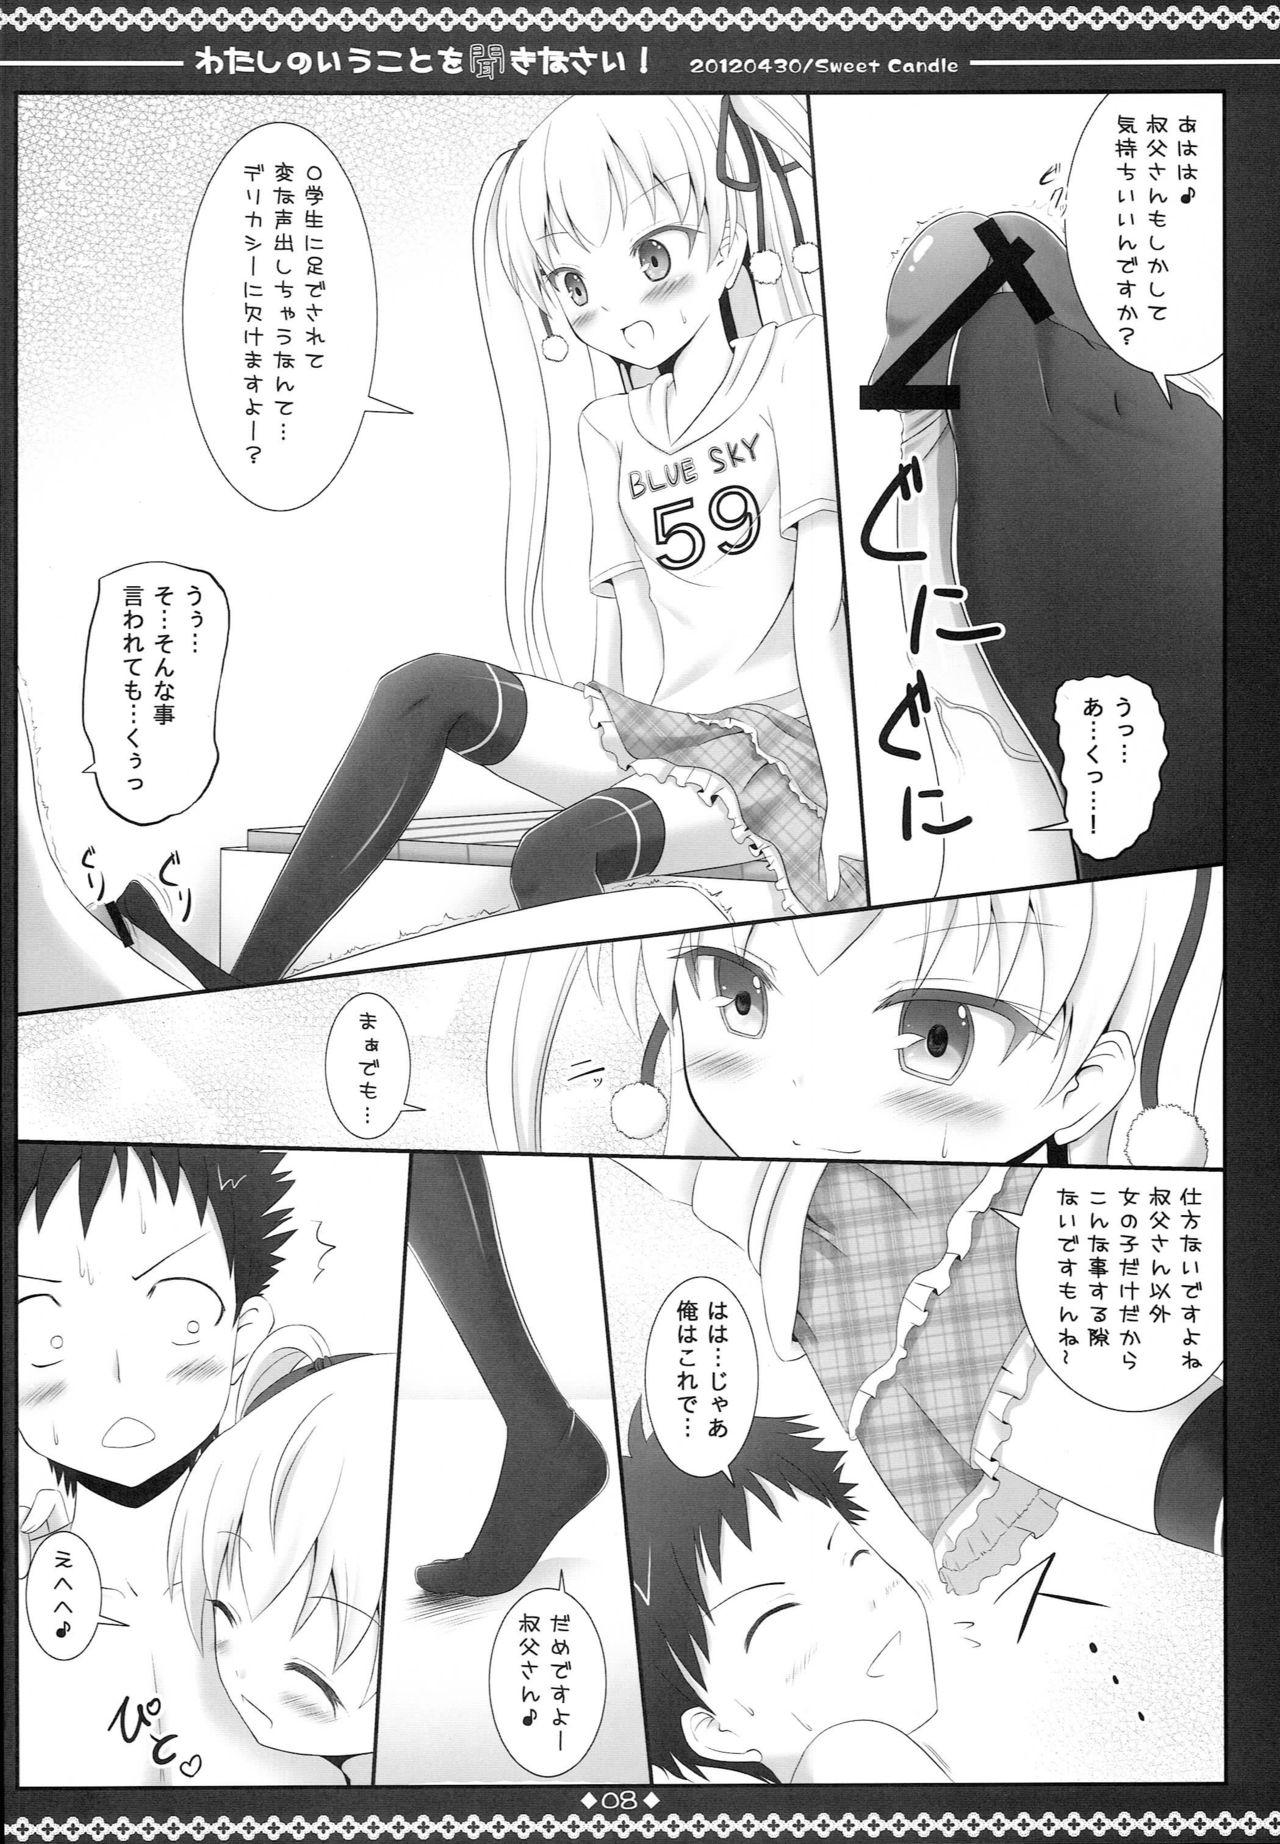 Monster Dick Watashi no Iu Koto o Kikinasai! - Papa no iu koto wo kikinasai Tugjob - Page 7